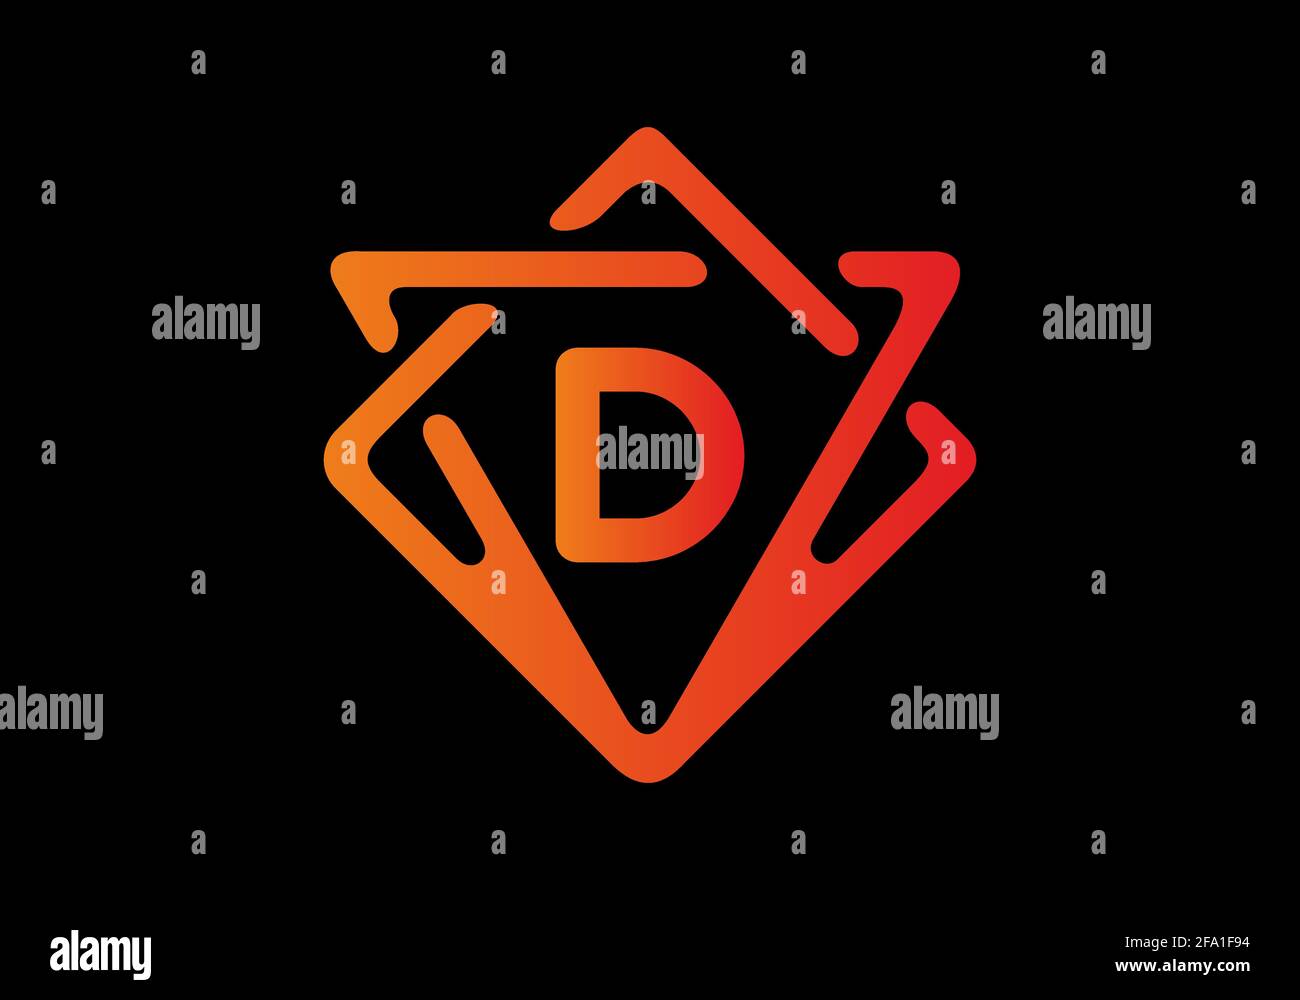 Dégradé de couleur rouge orange de la lettre D initiale Illustration de Vecteur